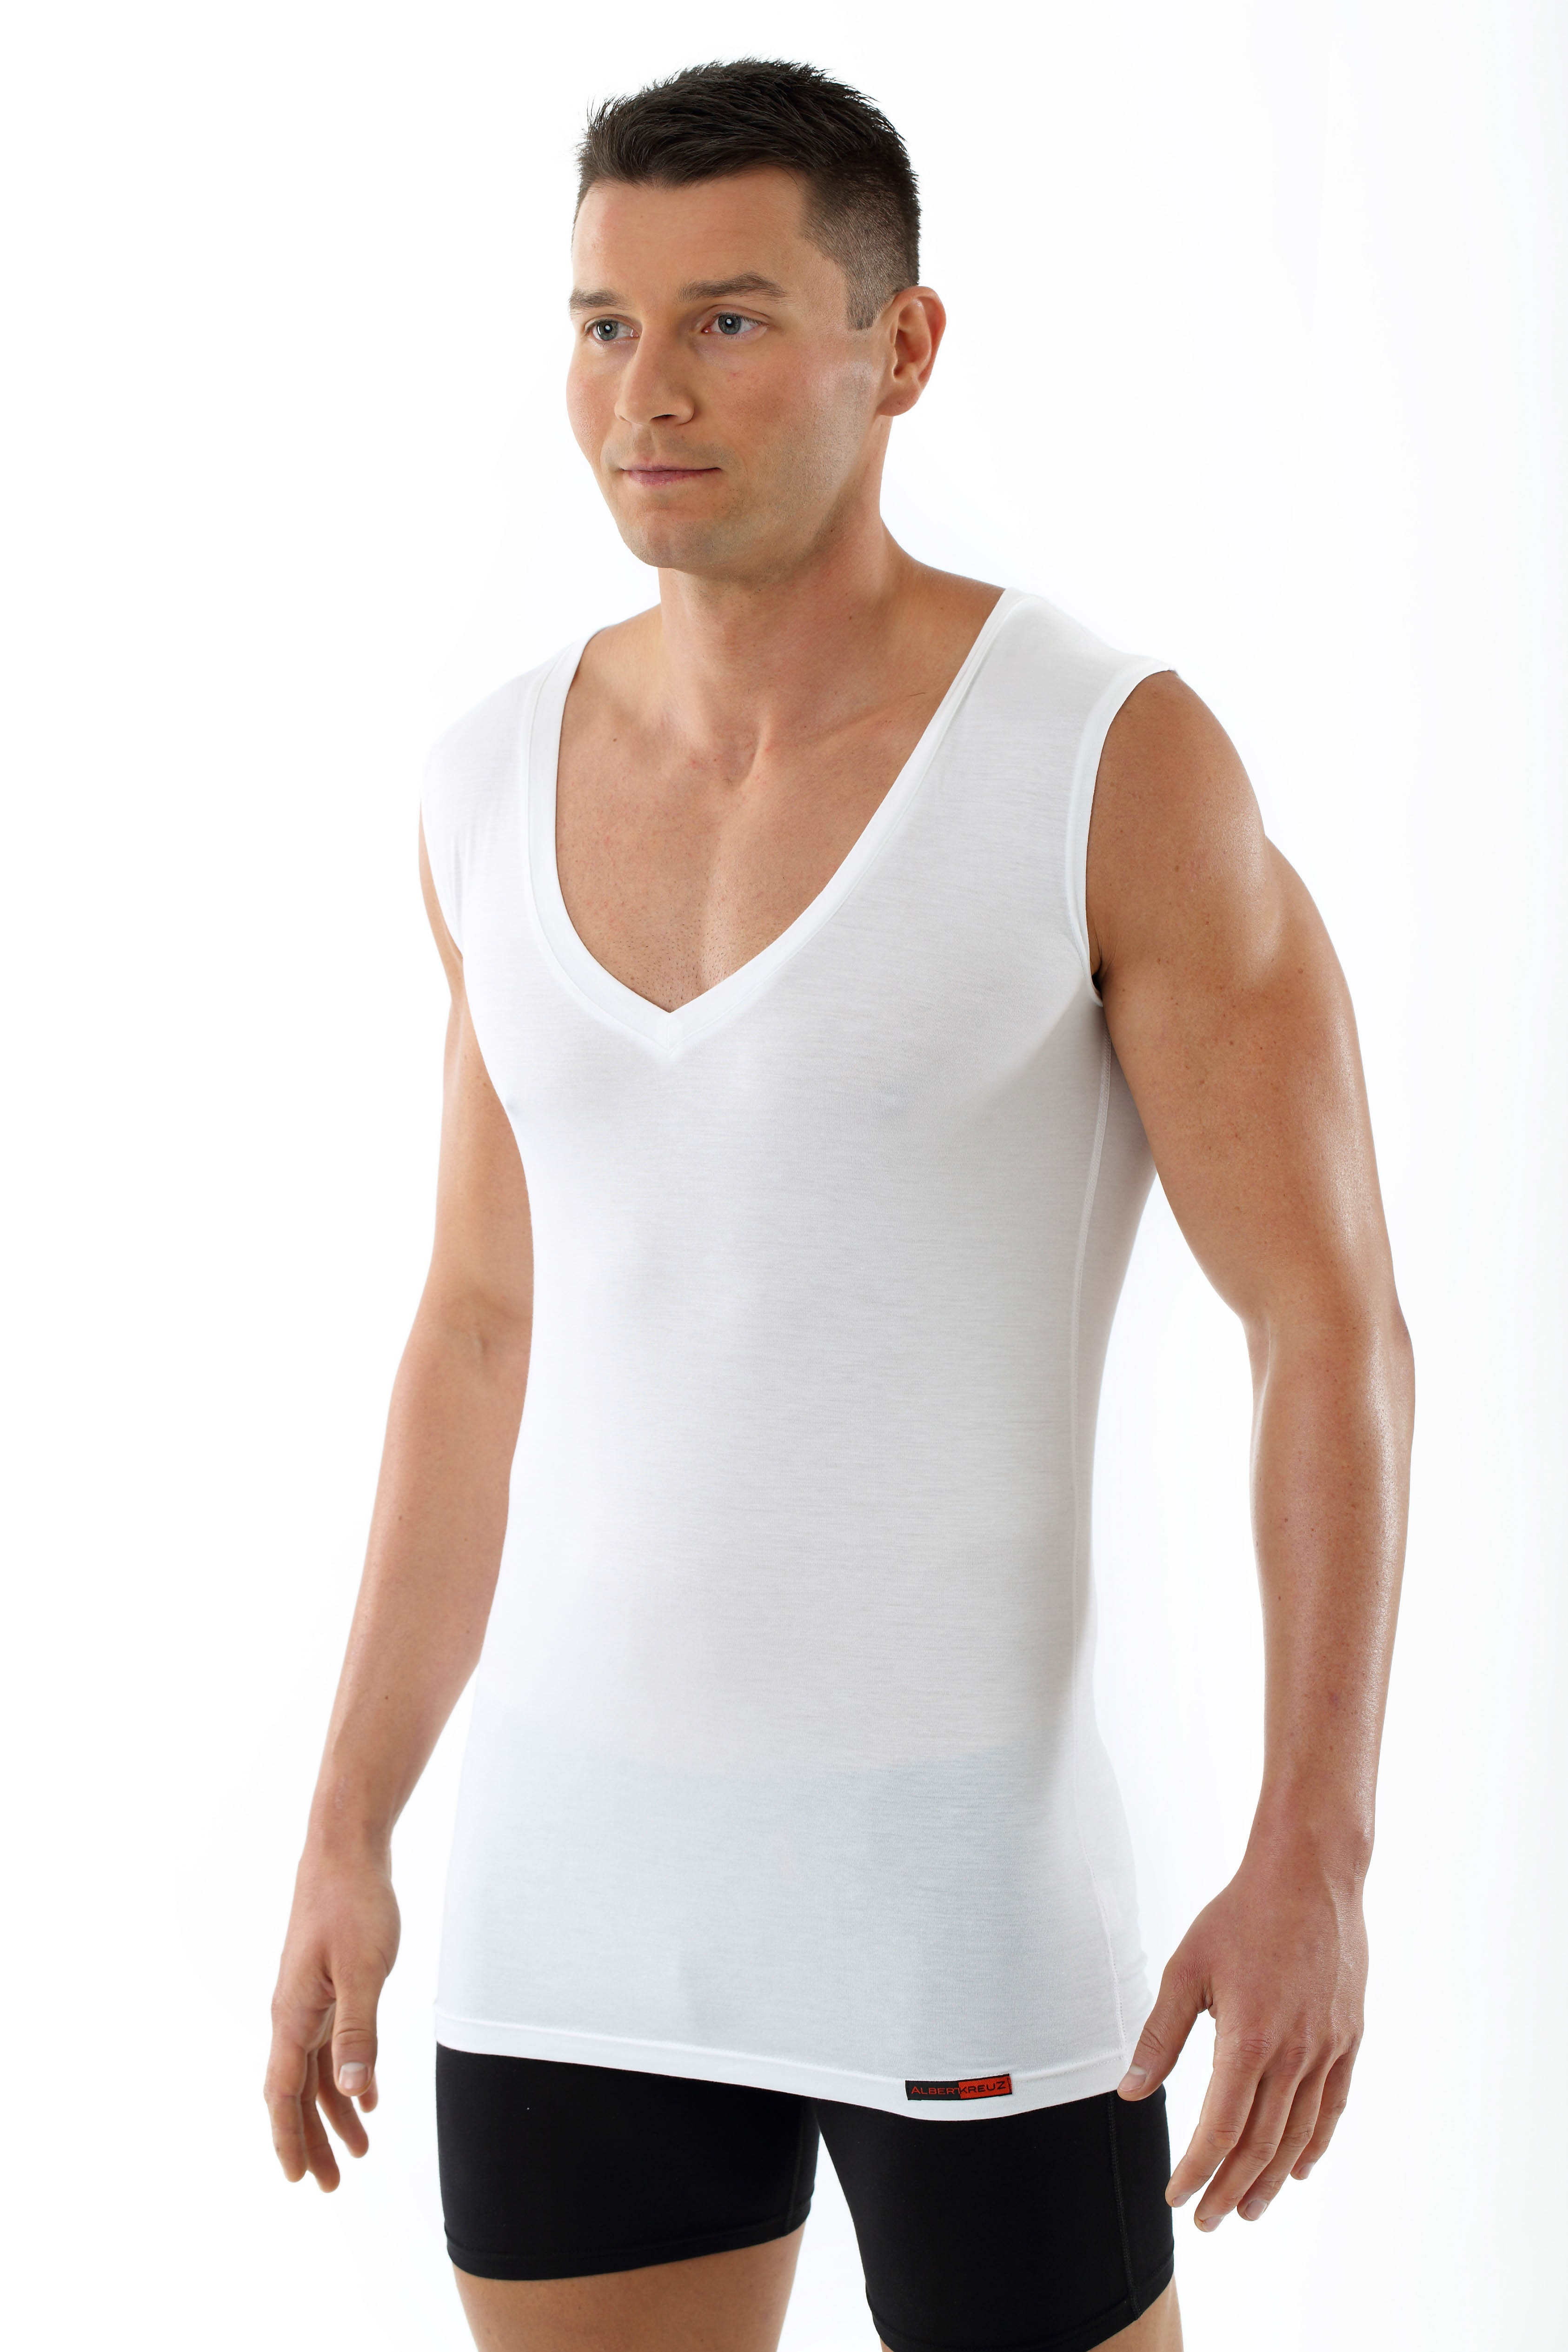 Men's MicroModal sleeveless undershirt "Stuttgart light" deep v-neck